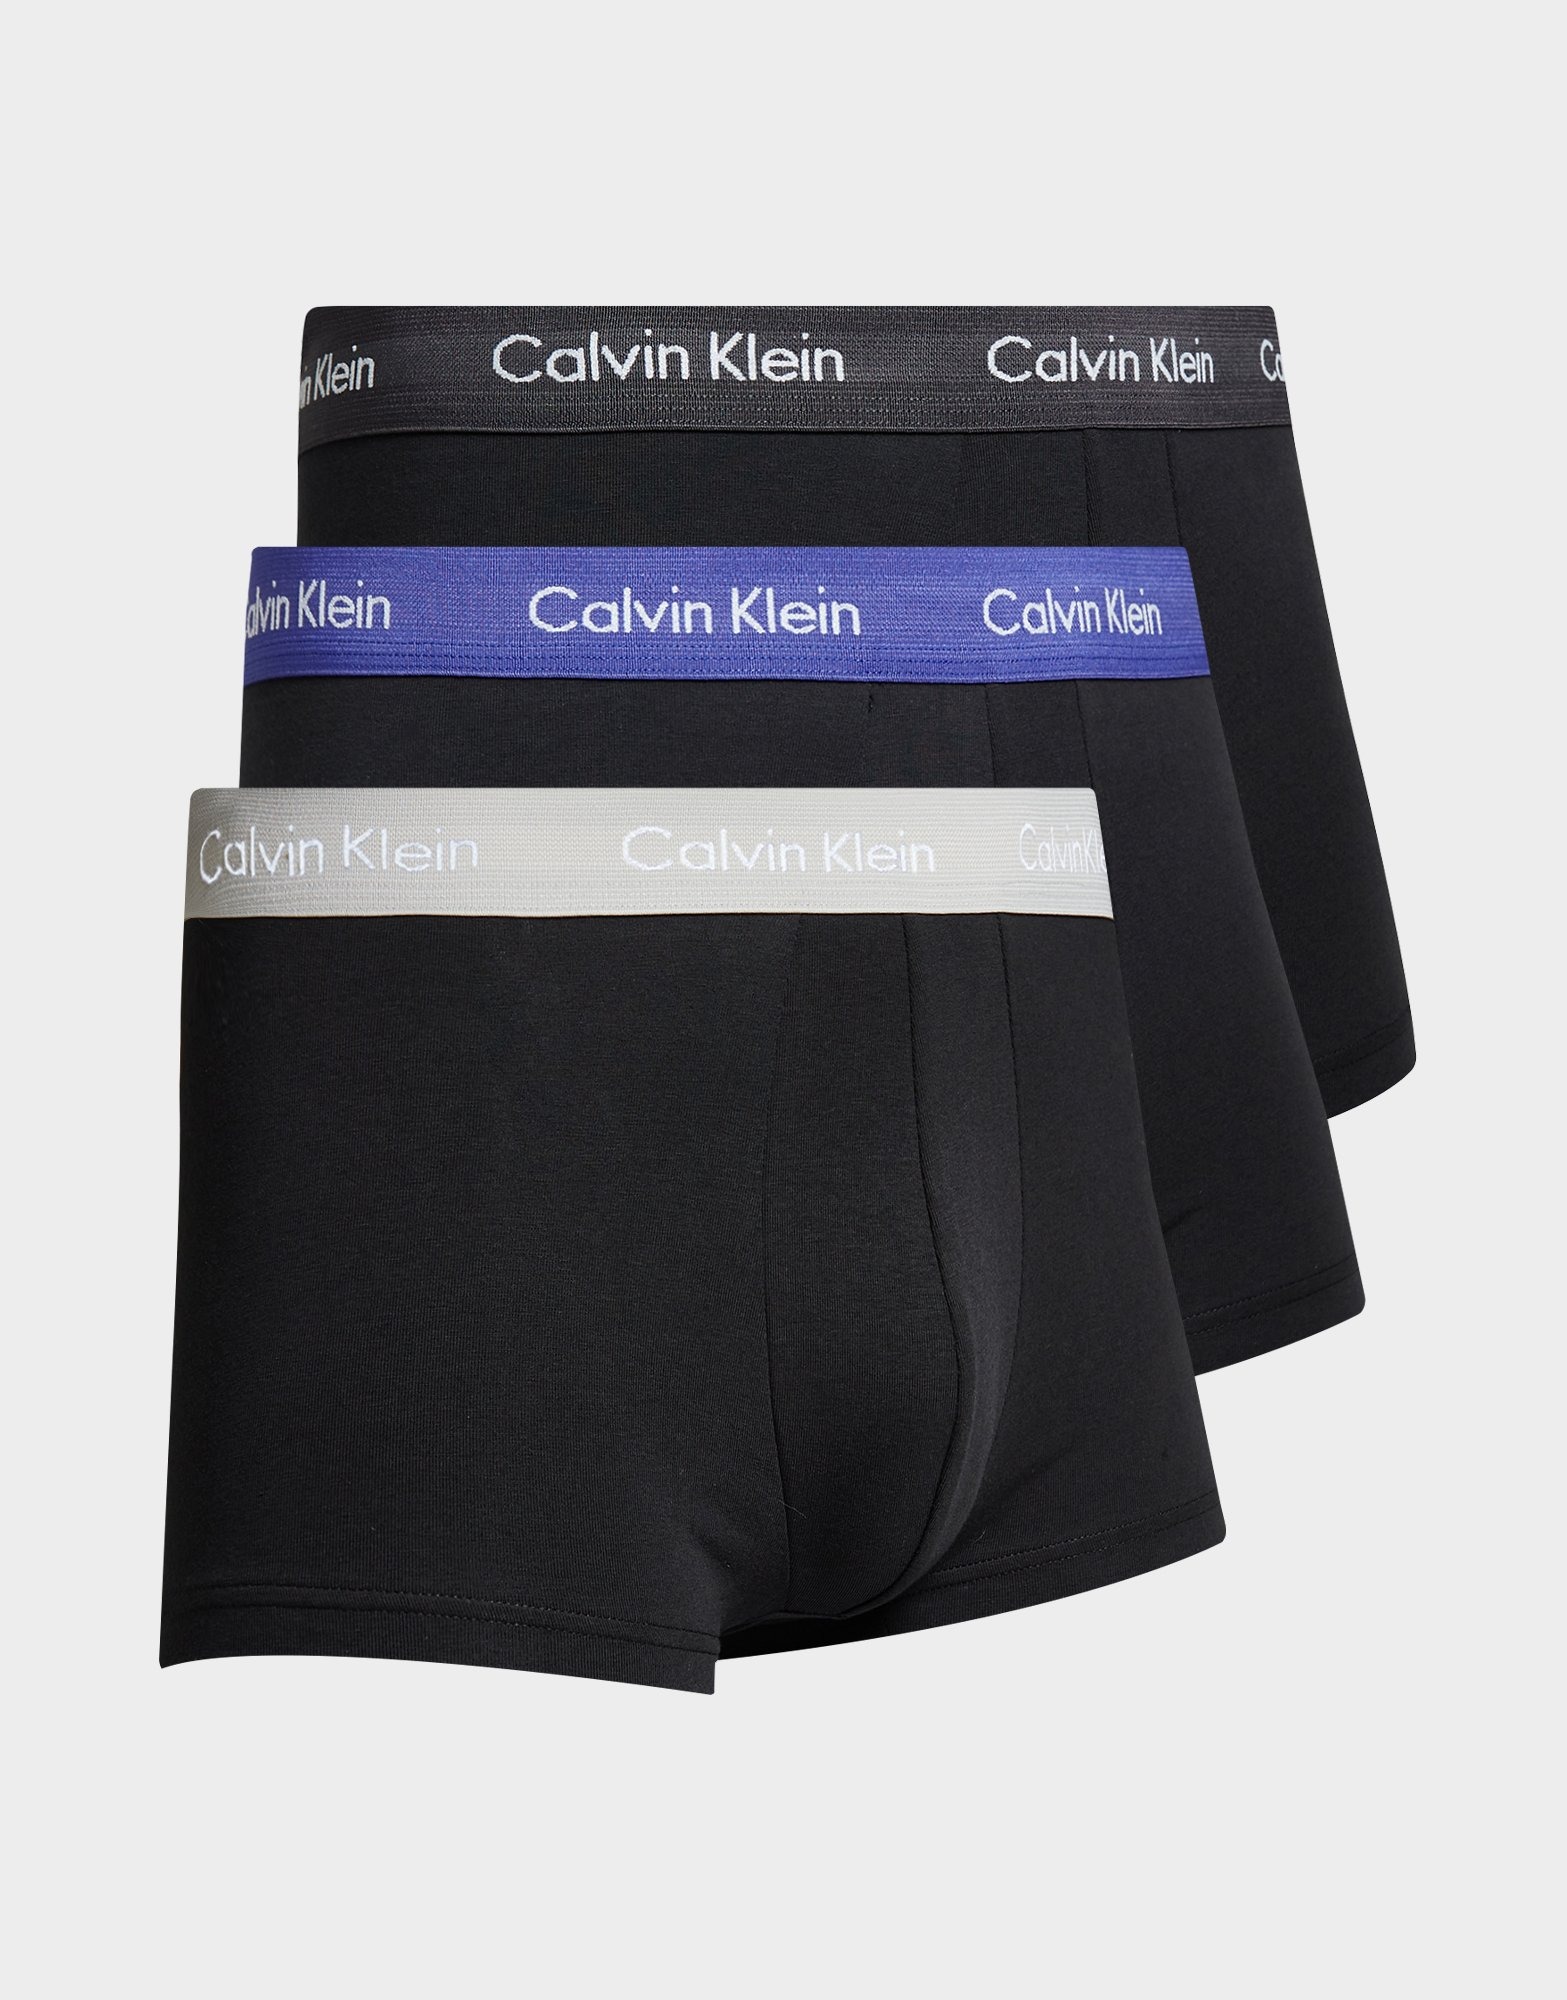 Sort Calvin Klein Underwear Underbukser Herre - JD Sports Danmark